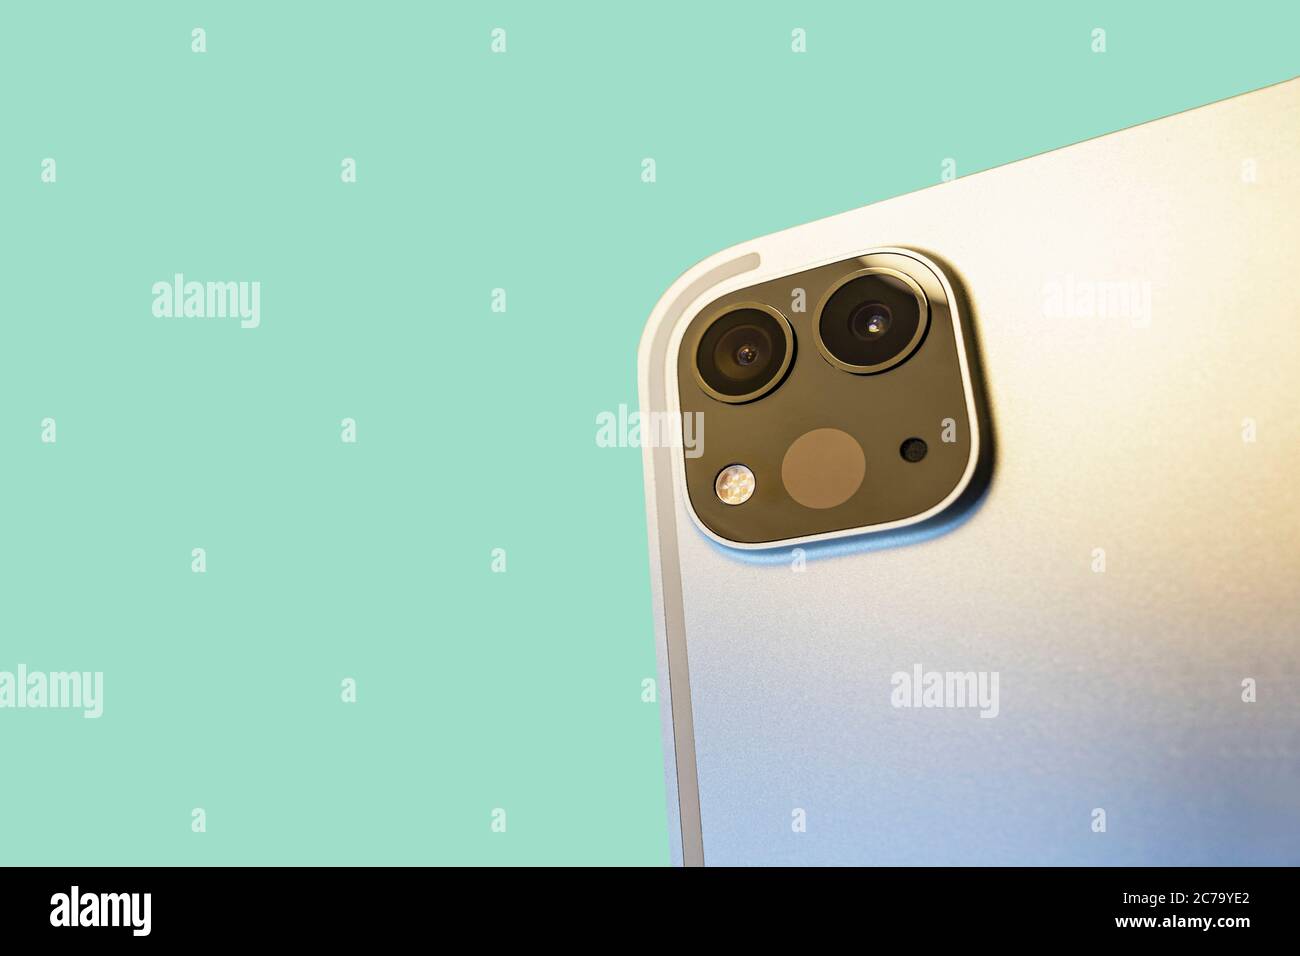 Kamera mit Lidar-Scanner und Weitwinkelkamera auf dem modernen silbernen  Tablet, grüne Oberfläche im Hintergrund Stockfotografie - Alamy